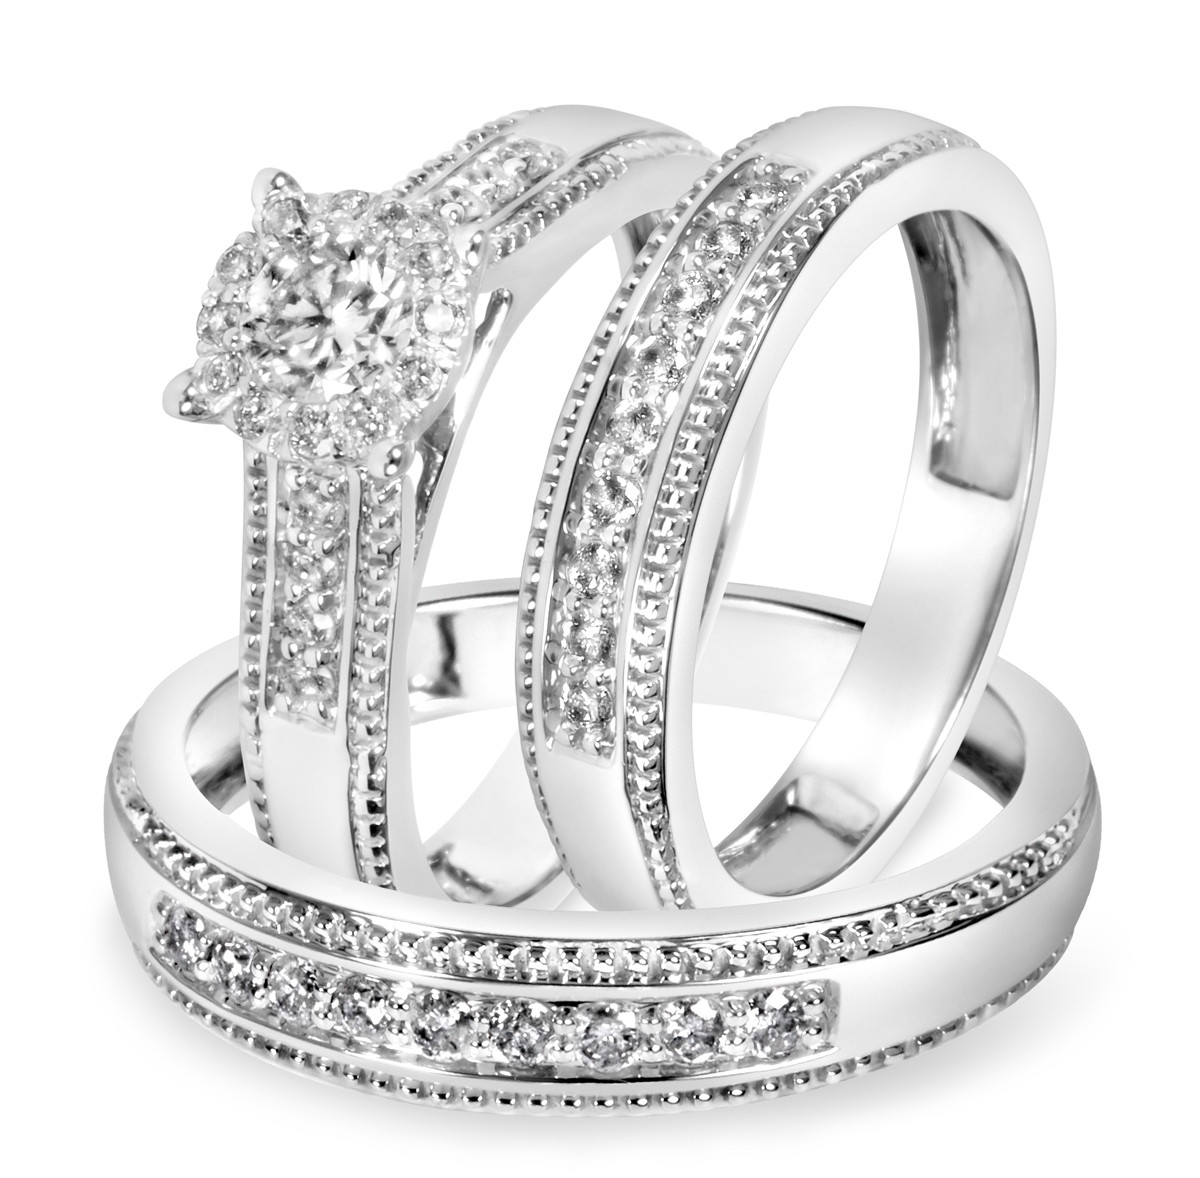 White Gold Wedding Rings For Her
 7 8 Carat T W Diamond Trio Matching Wedding Ring Set 14K